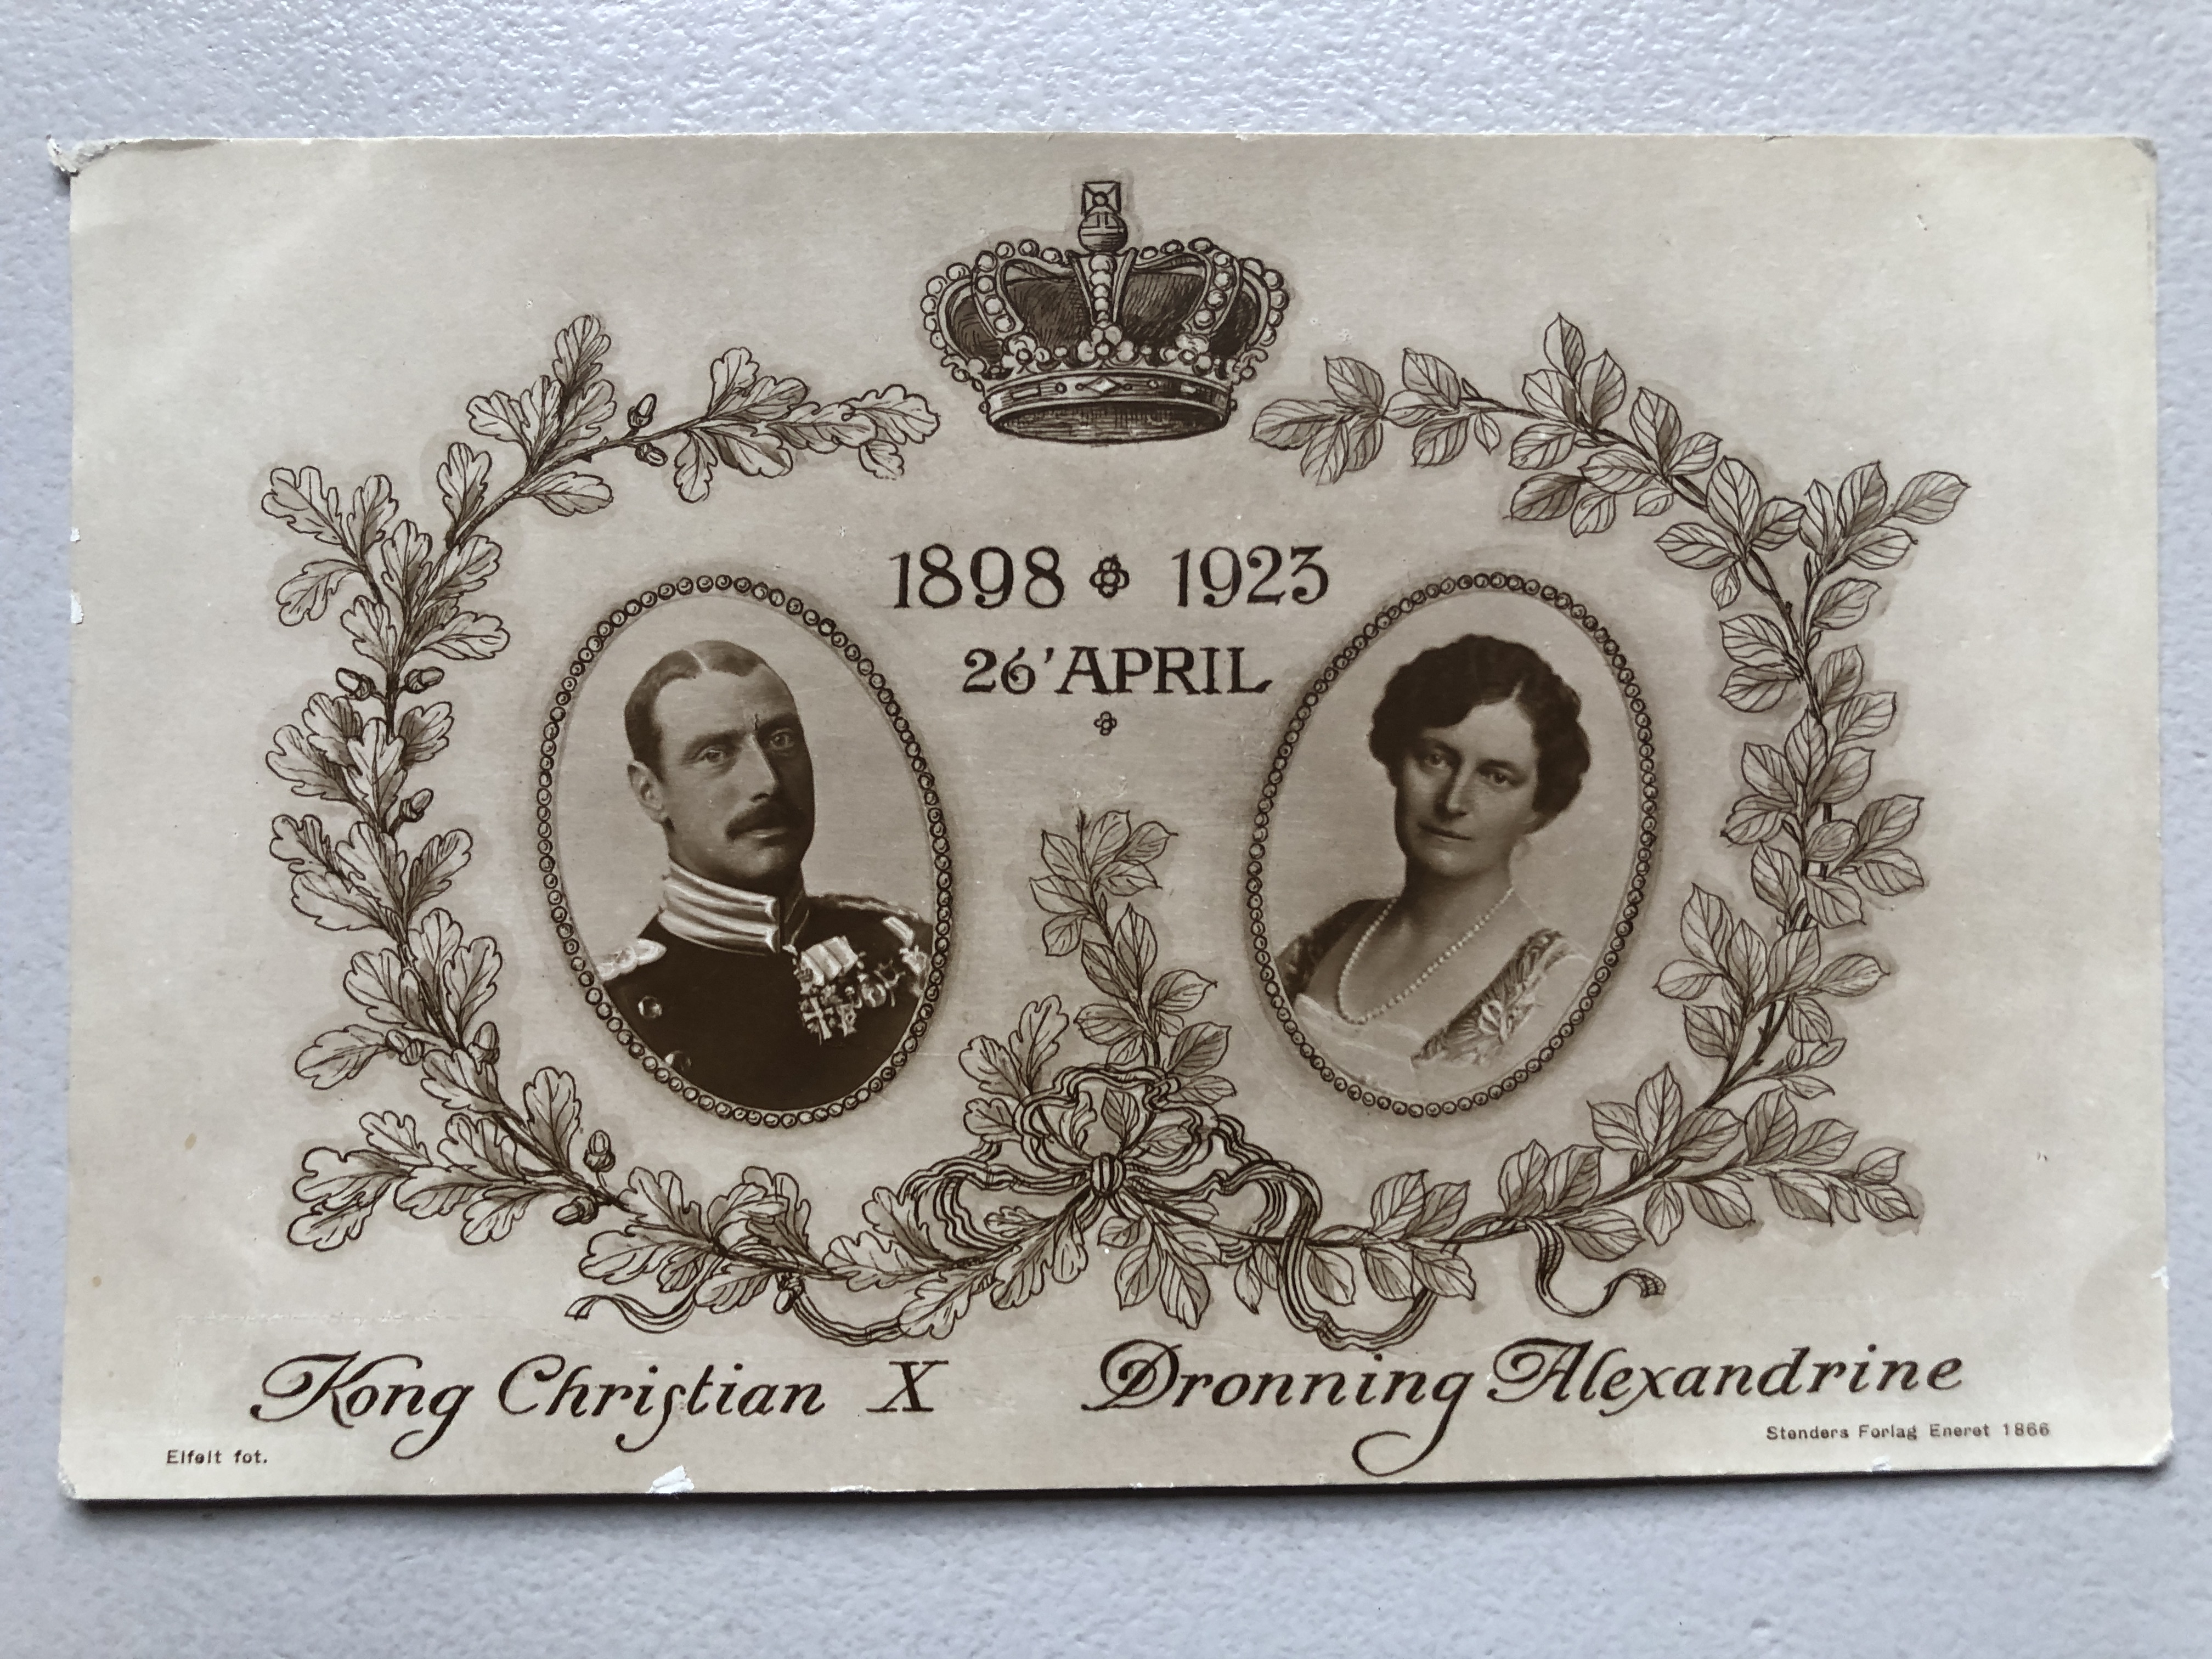 Kong Christian X, Dronning Alexandrine, 1898-1923, nr 634, Stenders forlag (1866)